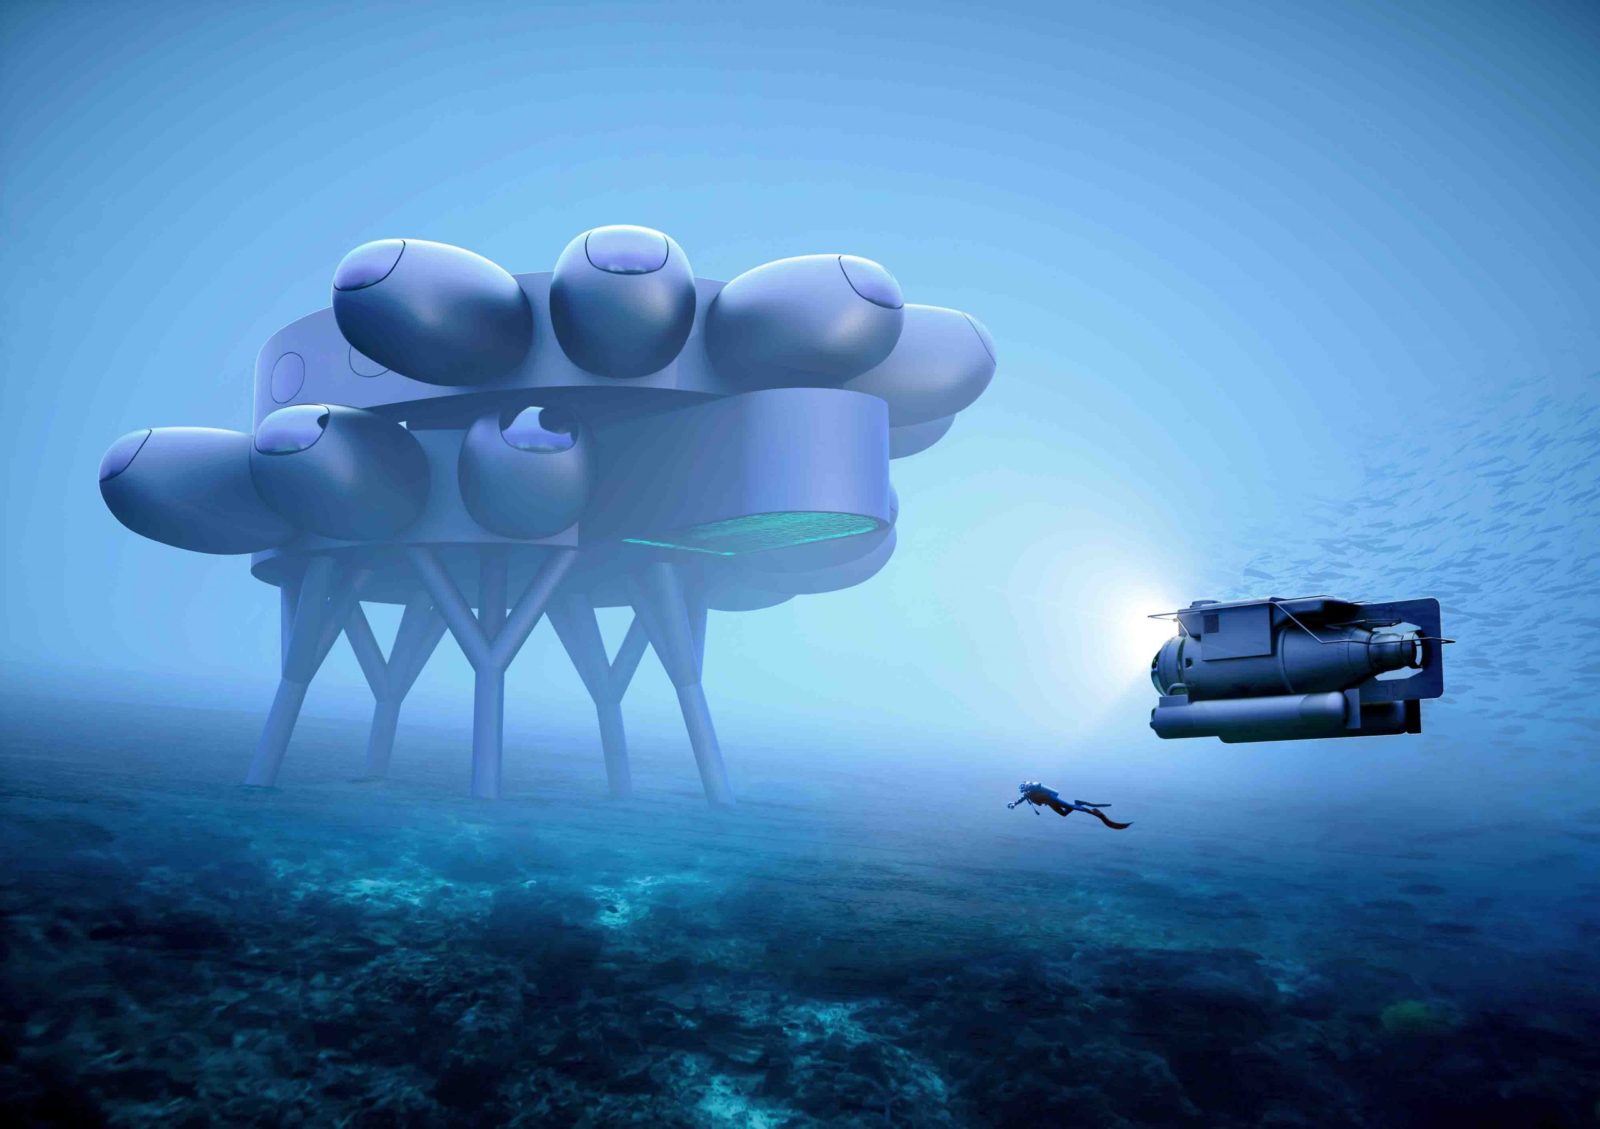 Fabien Cousteau’s Proteus concept design by Yves Béhar and fuseproject